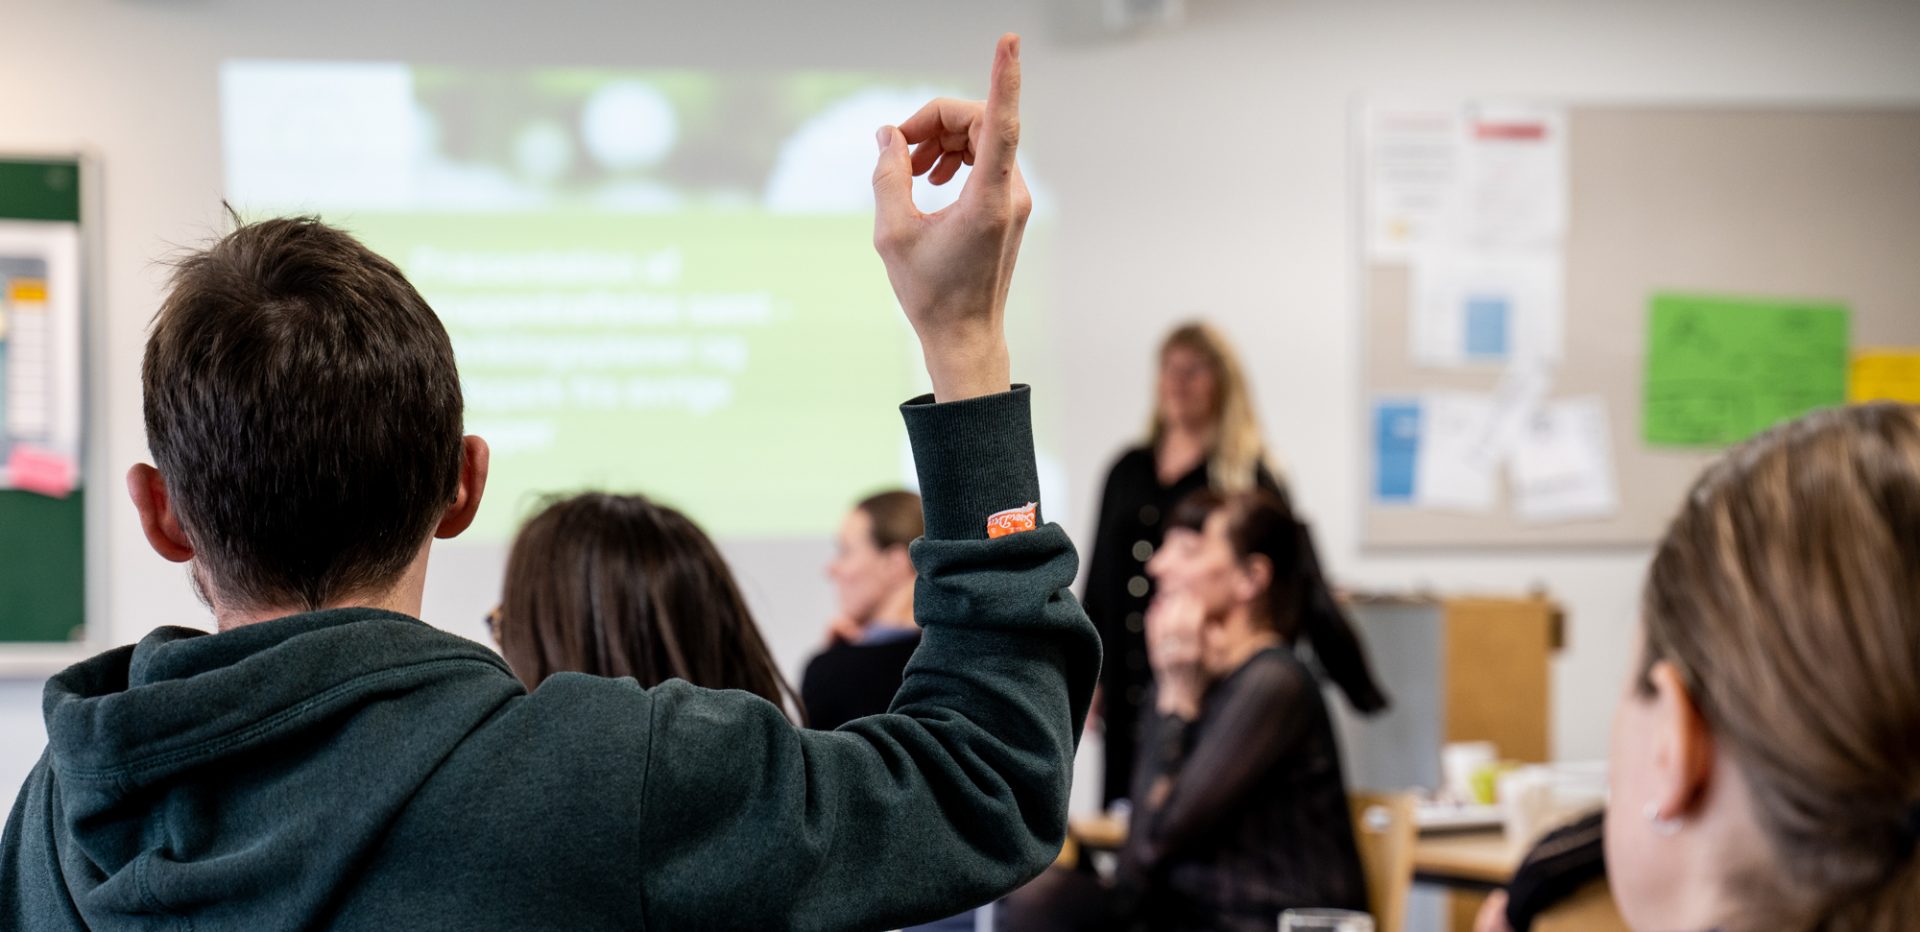 Farvefoto af person der rækker hånden op i noget der ligner et skolelokale